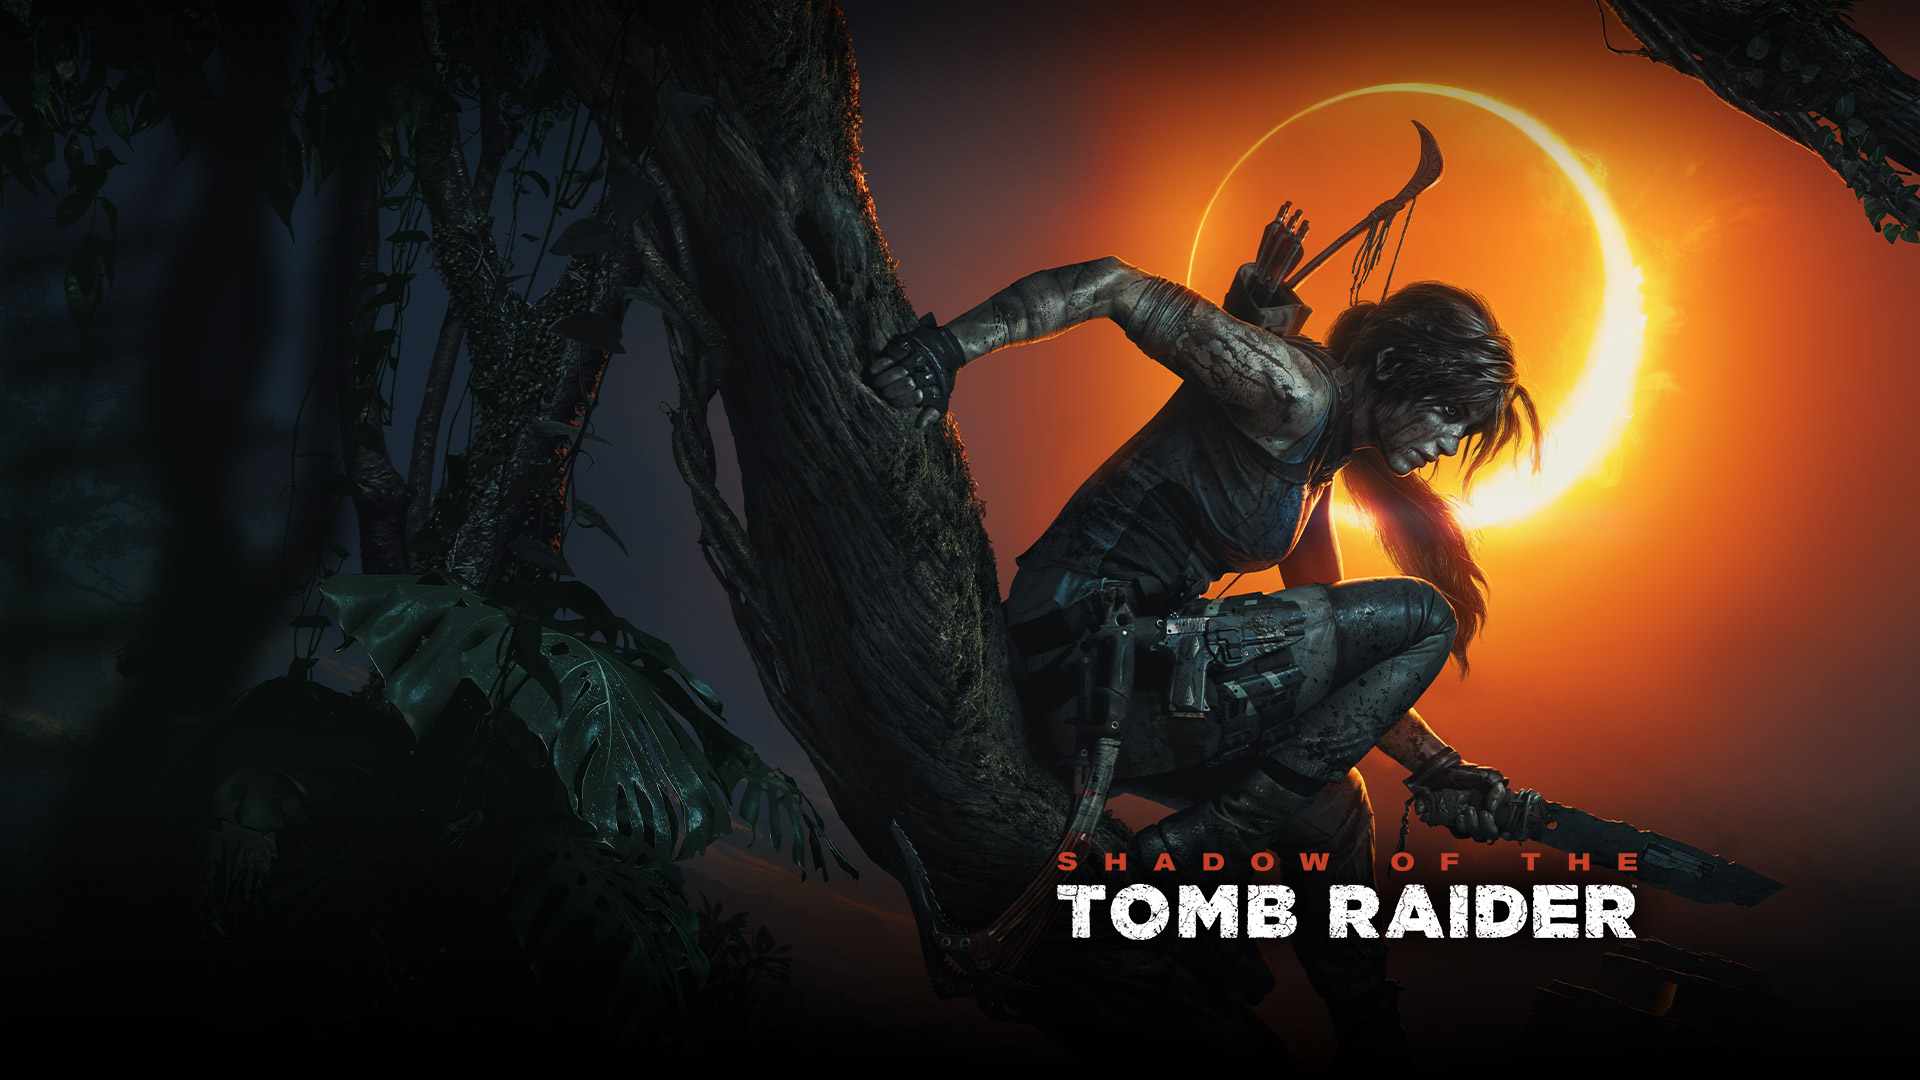 Shadow of the Tomb Raider, Lara Croft zit op een tak met een mes in haar hand met op de achtergrond een zonsverduistering